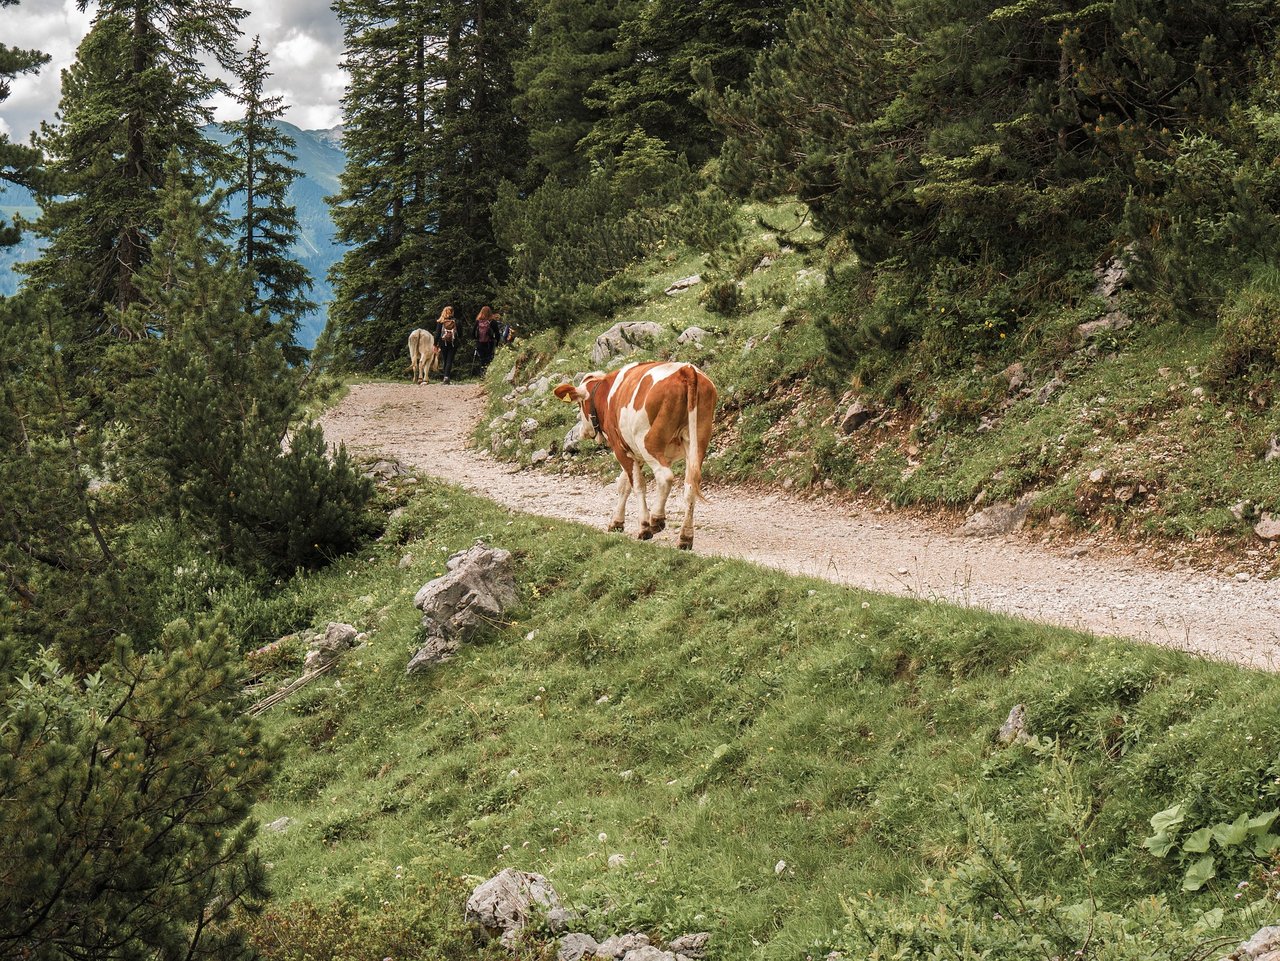 Bei Kuh-Angriffen sollte man nicht wegrennen, sondern ruhig weitergehen. Wenn man rennt, wird die Kuh mit grosser Wahrscheinlichkeit hinterherrennen. (Bild pixabay)